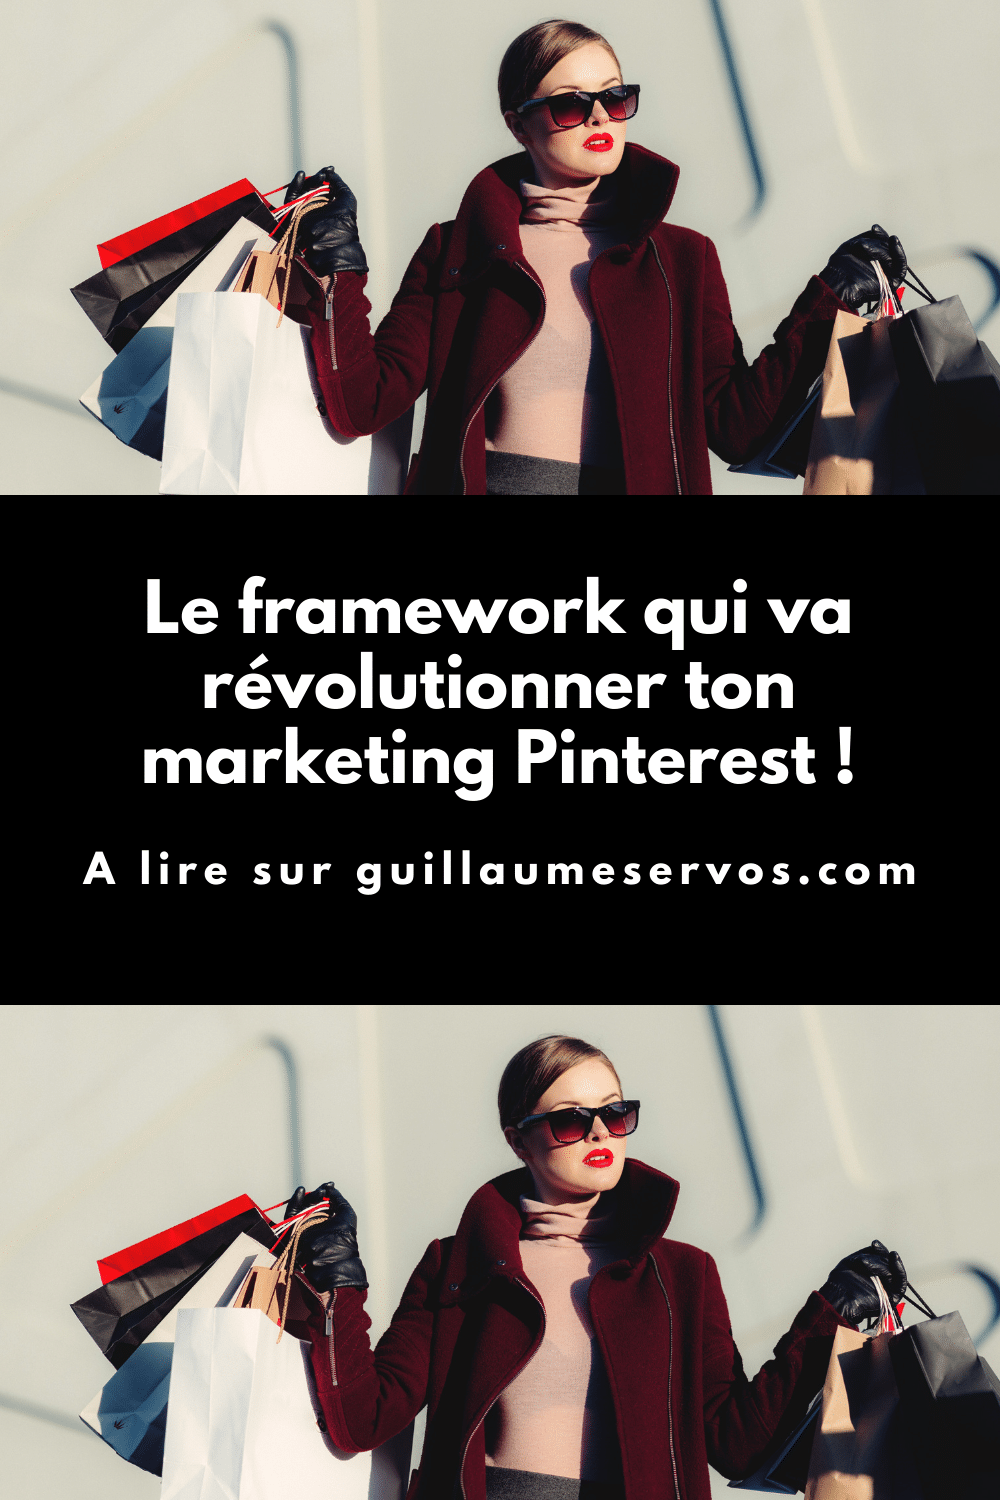 Tu cherches un framework pour faire décoller ton marketing Pinterest ? Au menu : inspirer, informer et décder.